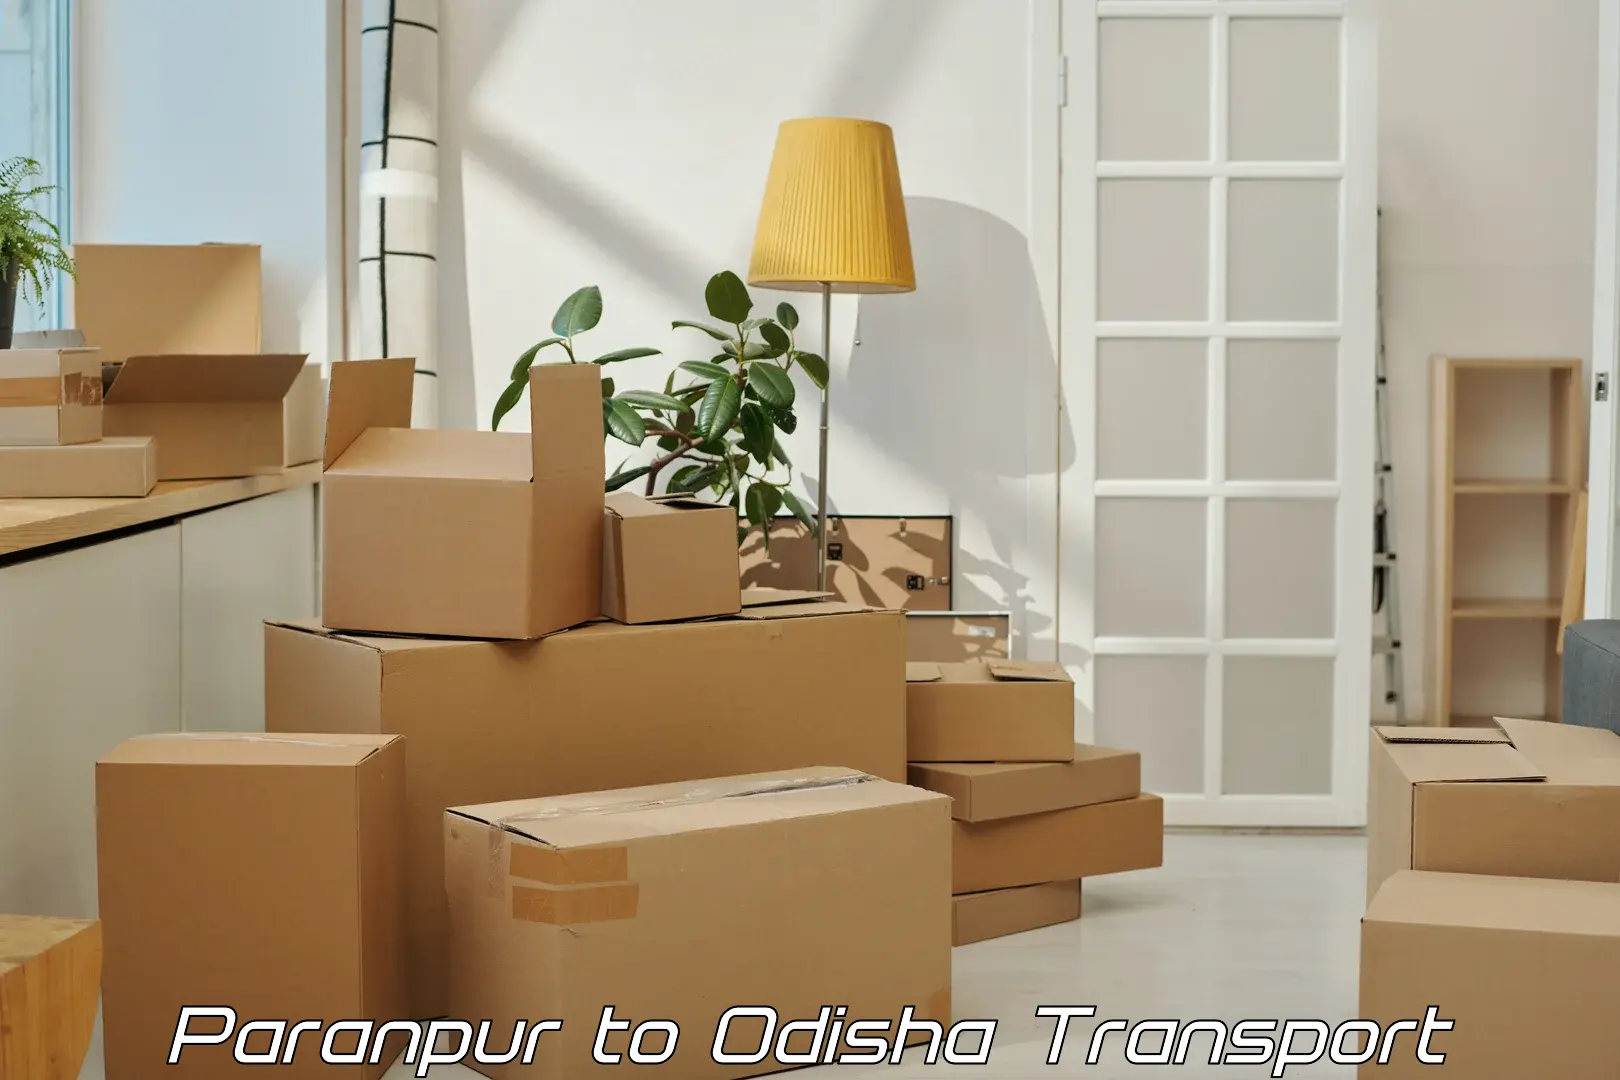 Furniture transport service Paranpur to Mahakalapada